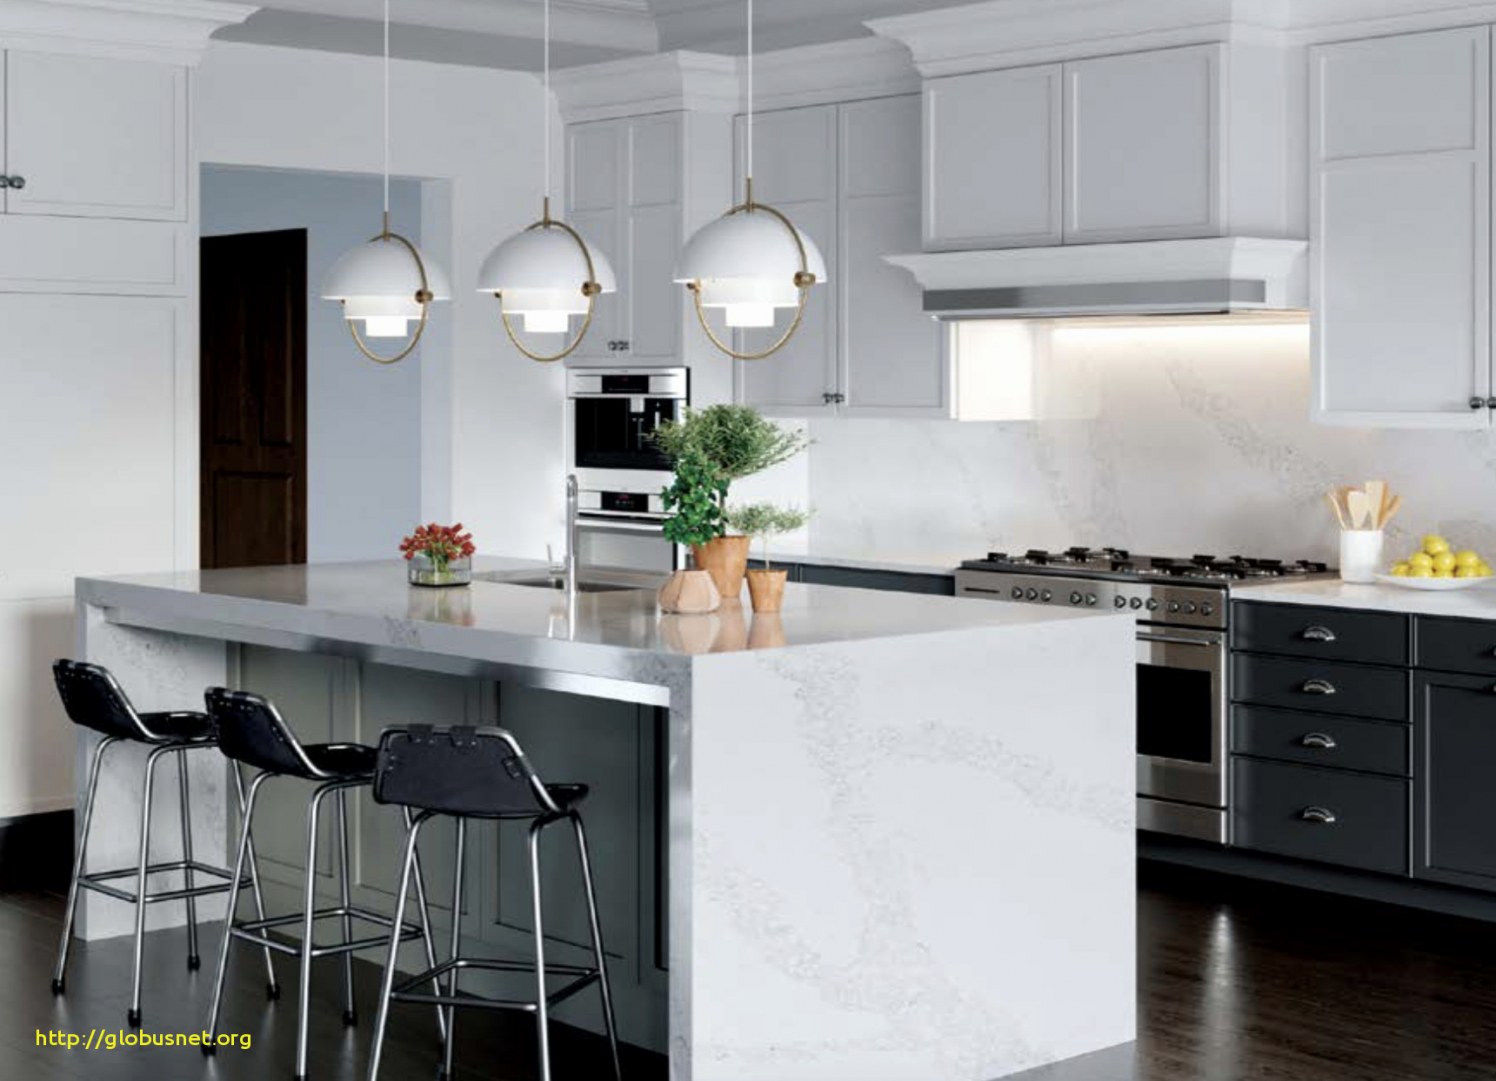 white brick backsplash in kitchen elegant kitchen backsplash with oak cabinets of white brick backsplash in kitchen 1